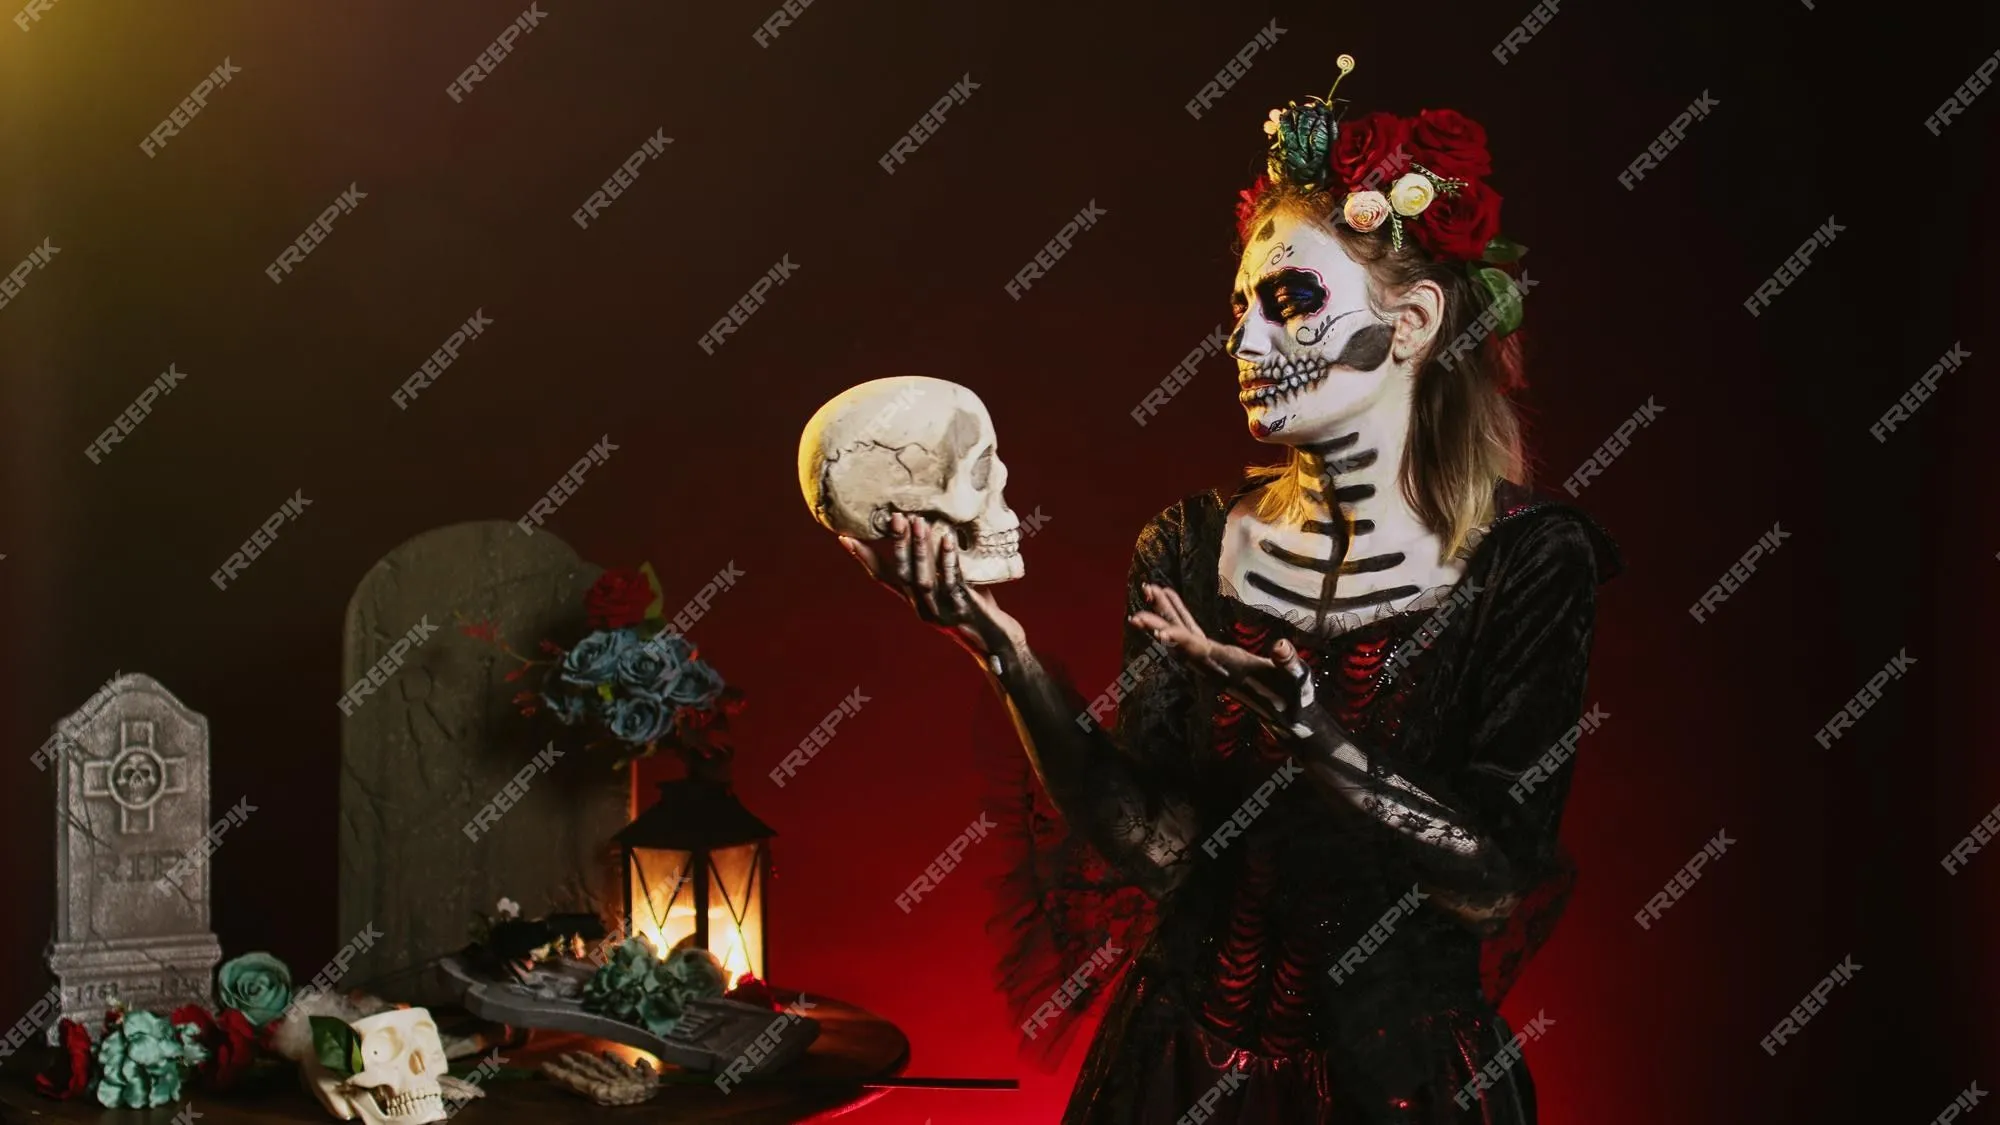 Coqueta diosa de la muerte mirando el cráneo y actuando espeluznante,  vestida con un disfraz de cavalera catrina con flores y maquillaje.  pareciendo santa santa muerte en el día de la tradición